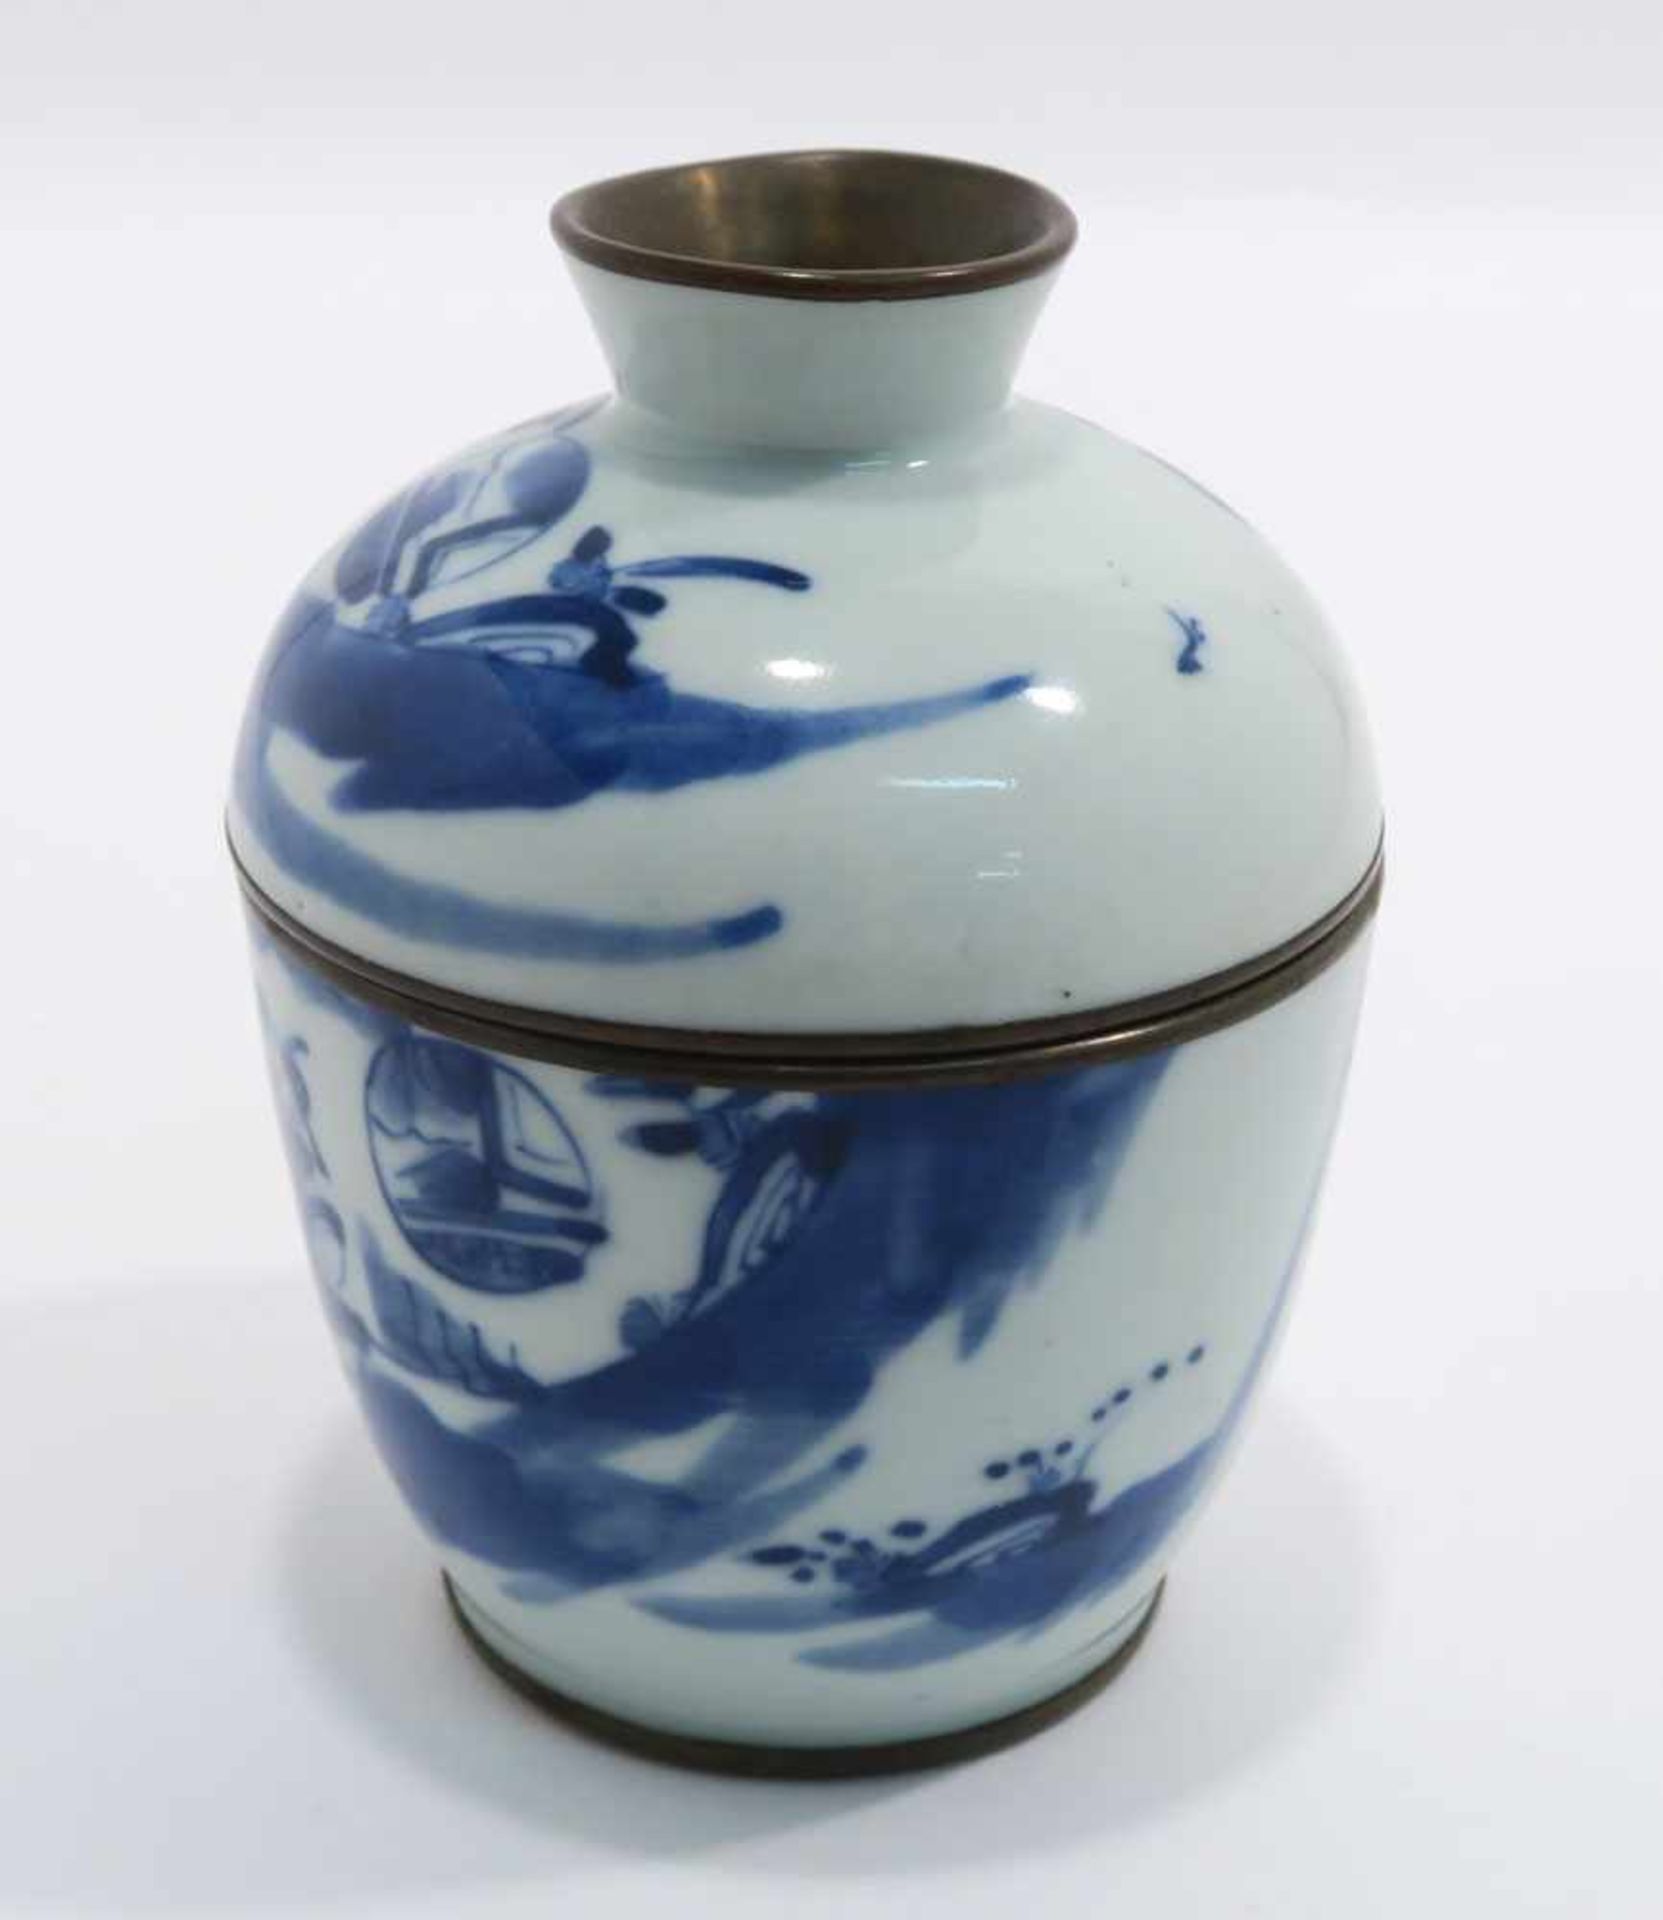 Opiumpfeife / Vase / DeckelgefäßChina. Porzellan, tlw. mit Kupfermontierung. Verschiedene bunte bzw. - Bild 9 aus 21